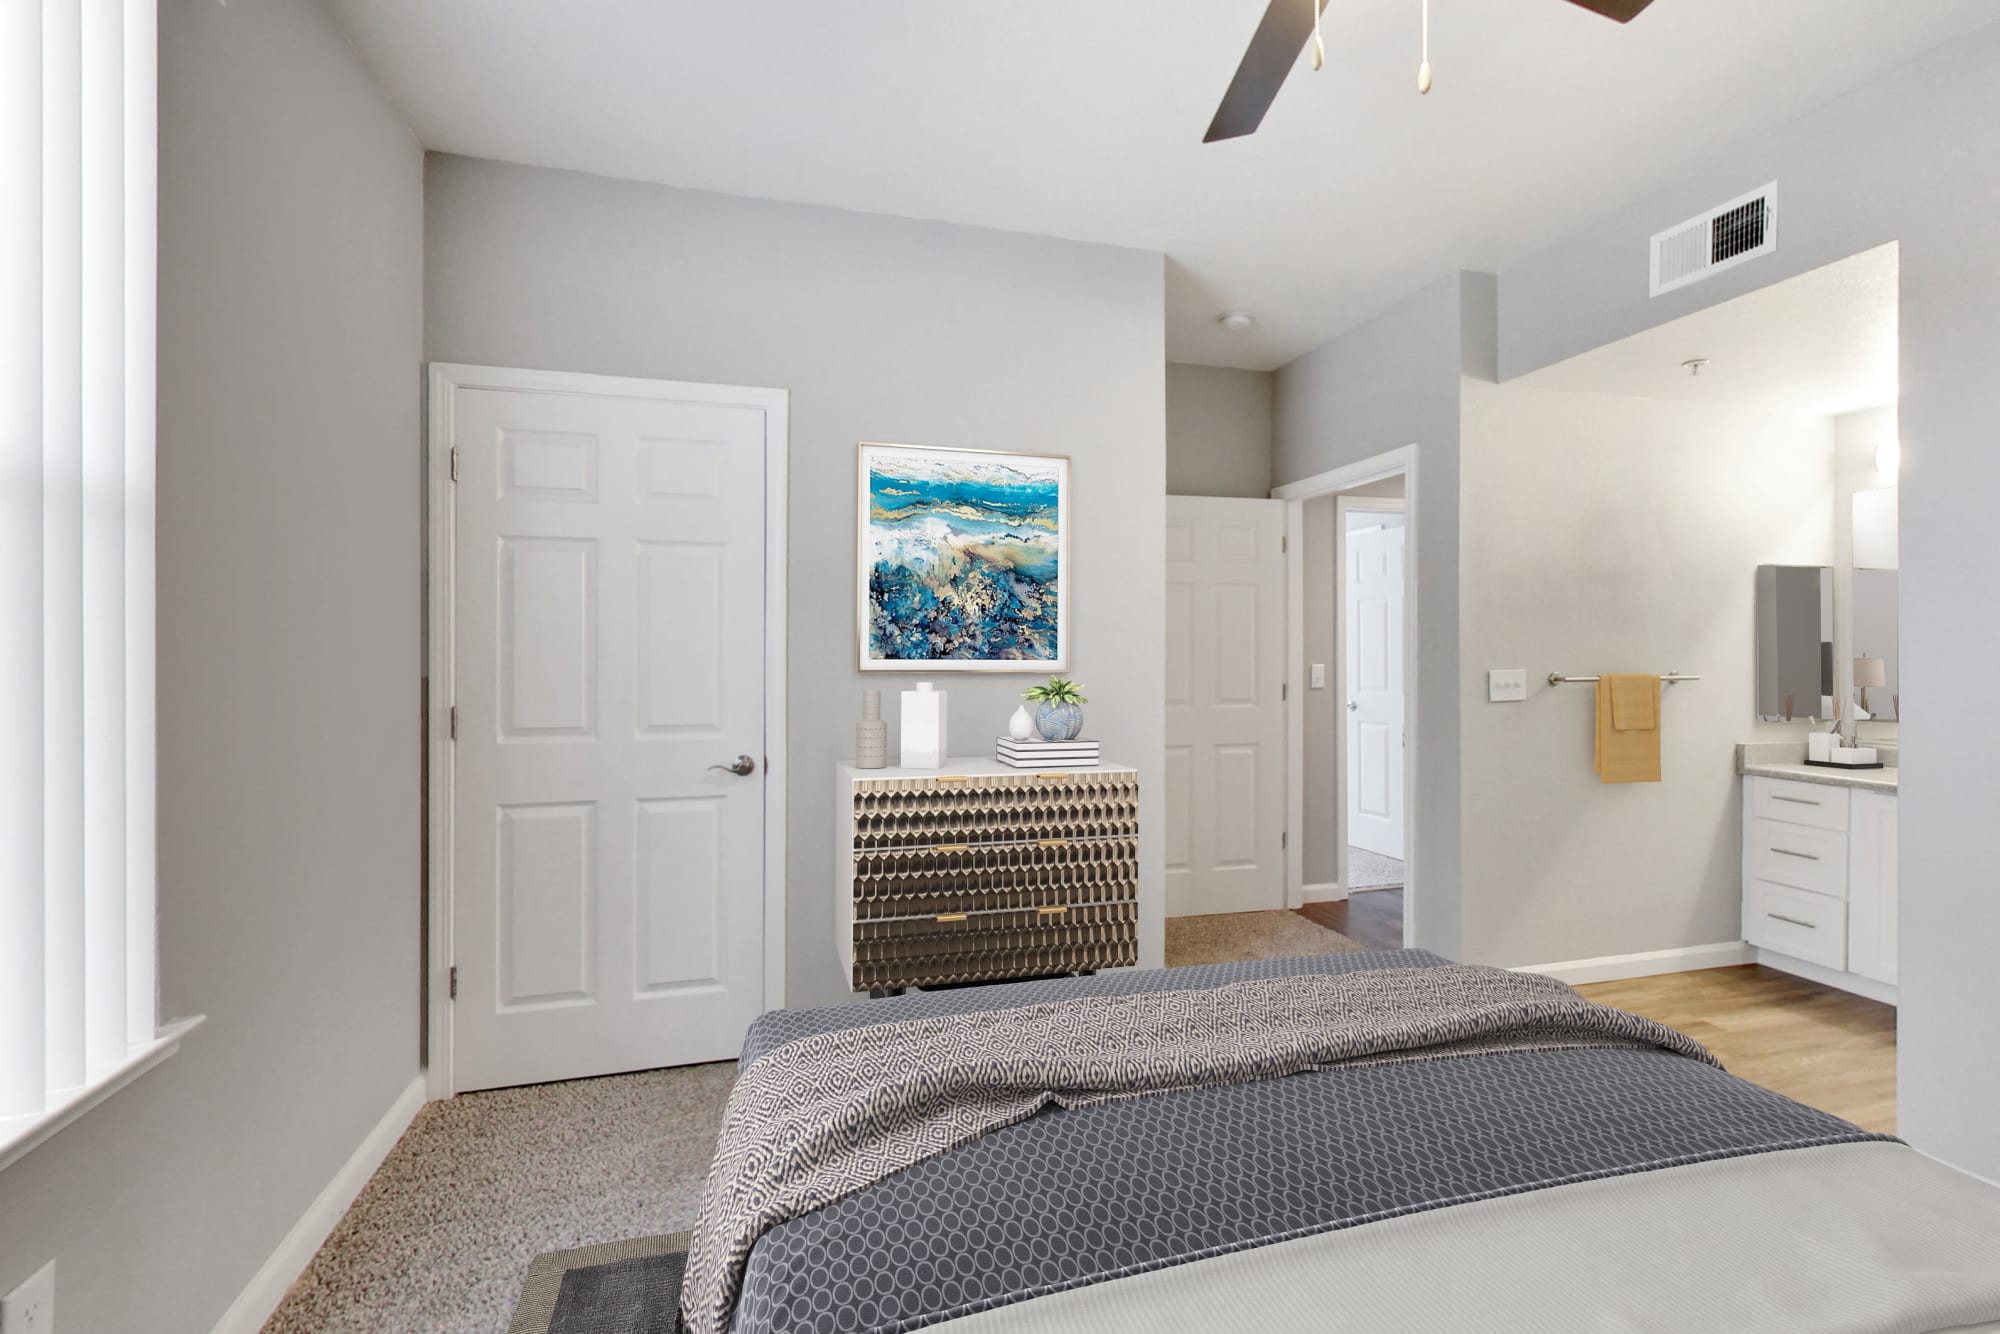 A bedroom at Natomas Park Apartments in Sacramento, California